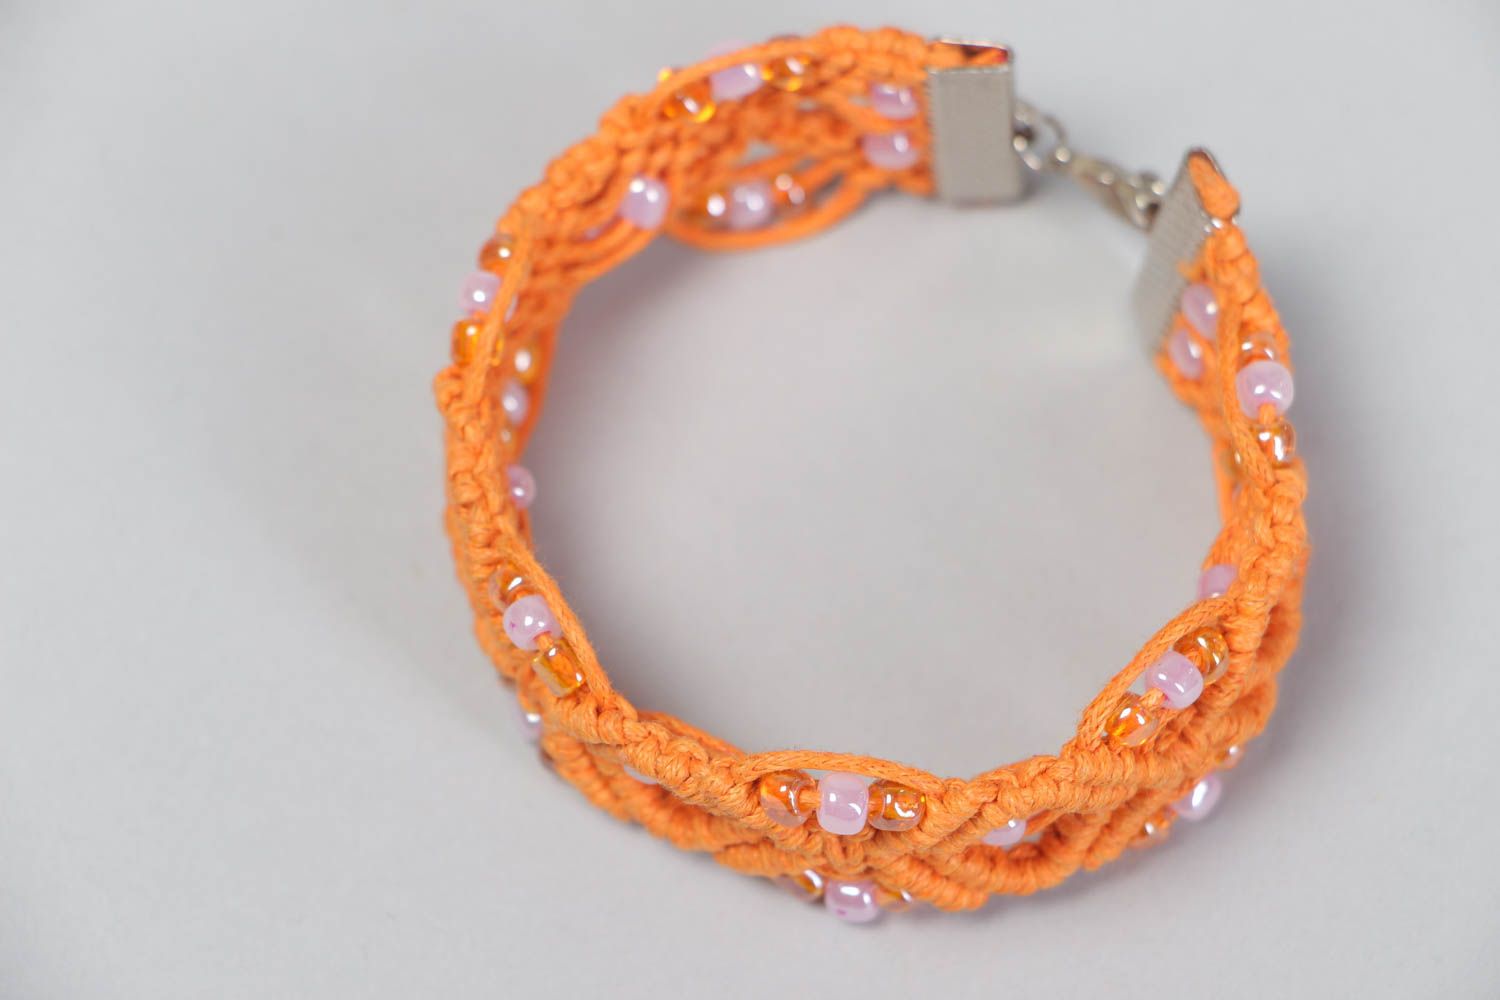 Текстильный браслет ажурный из ниток и бисера оранжевый красивый ручная работа фото 3